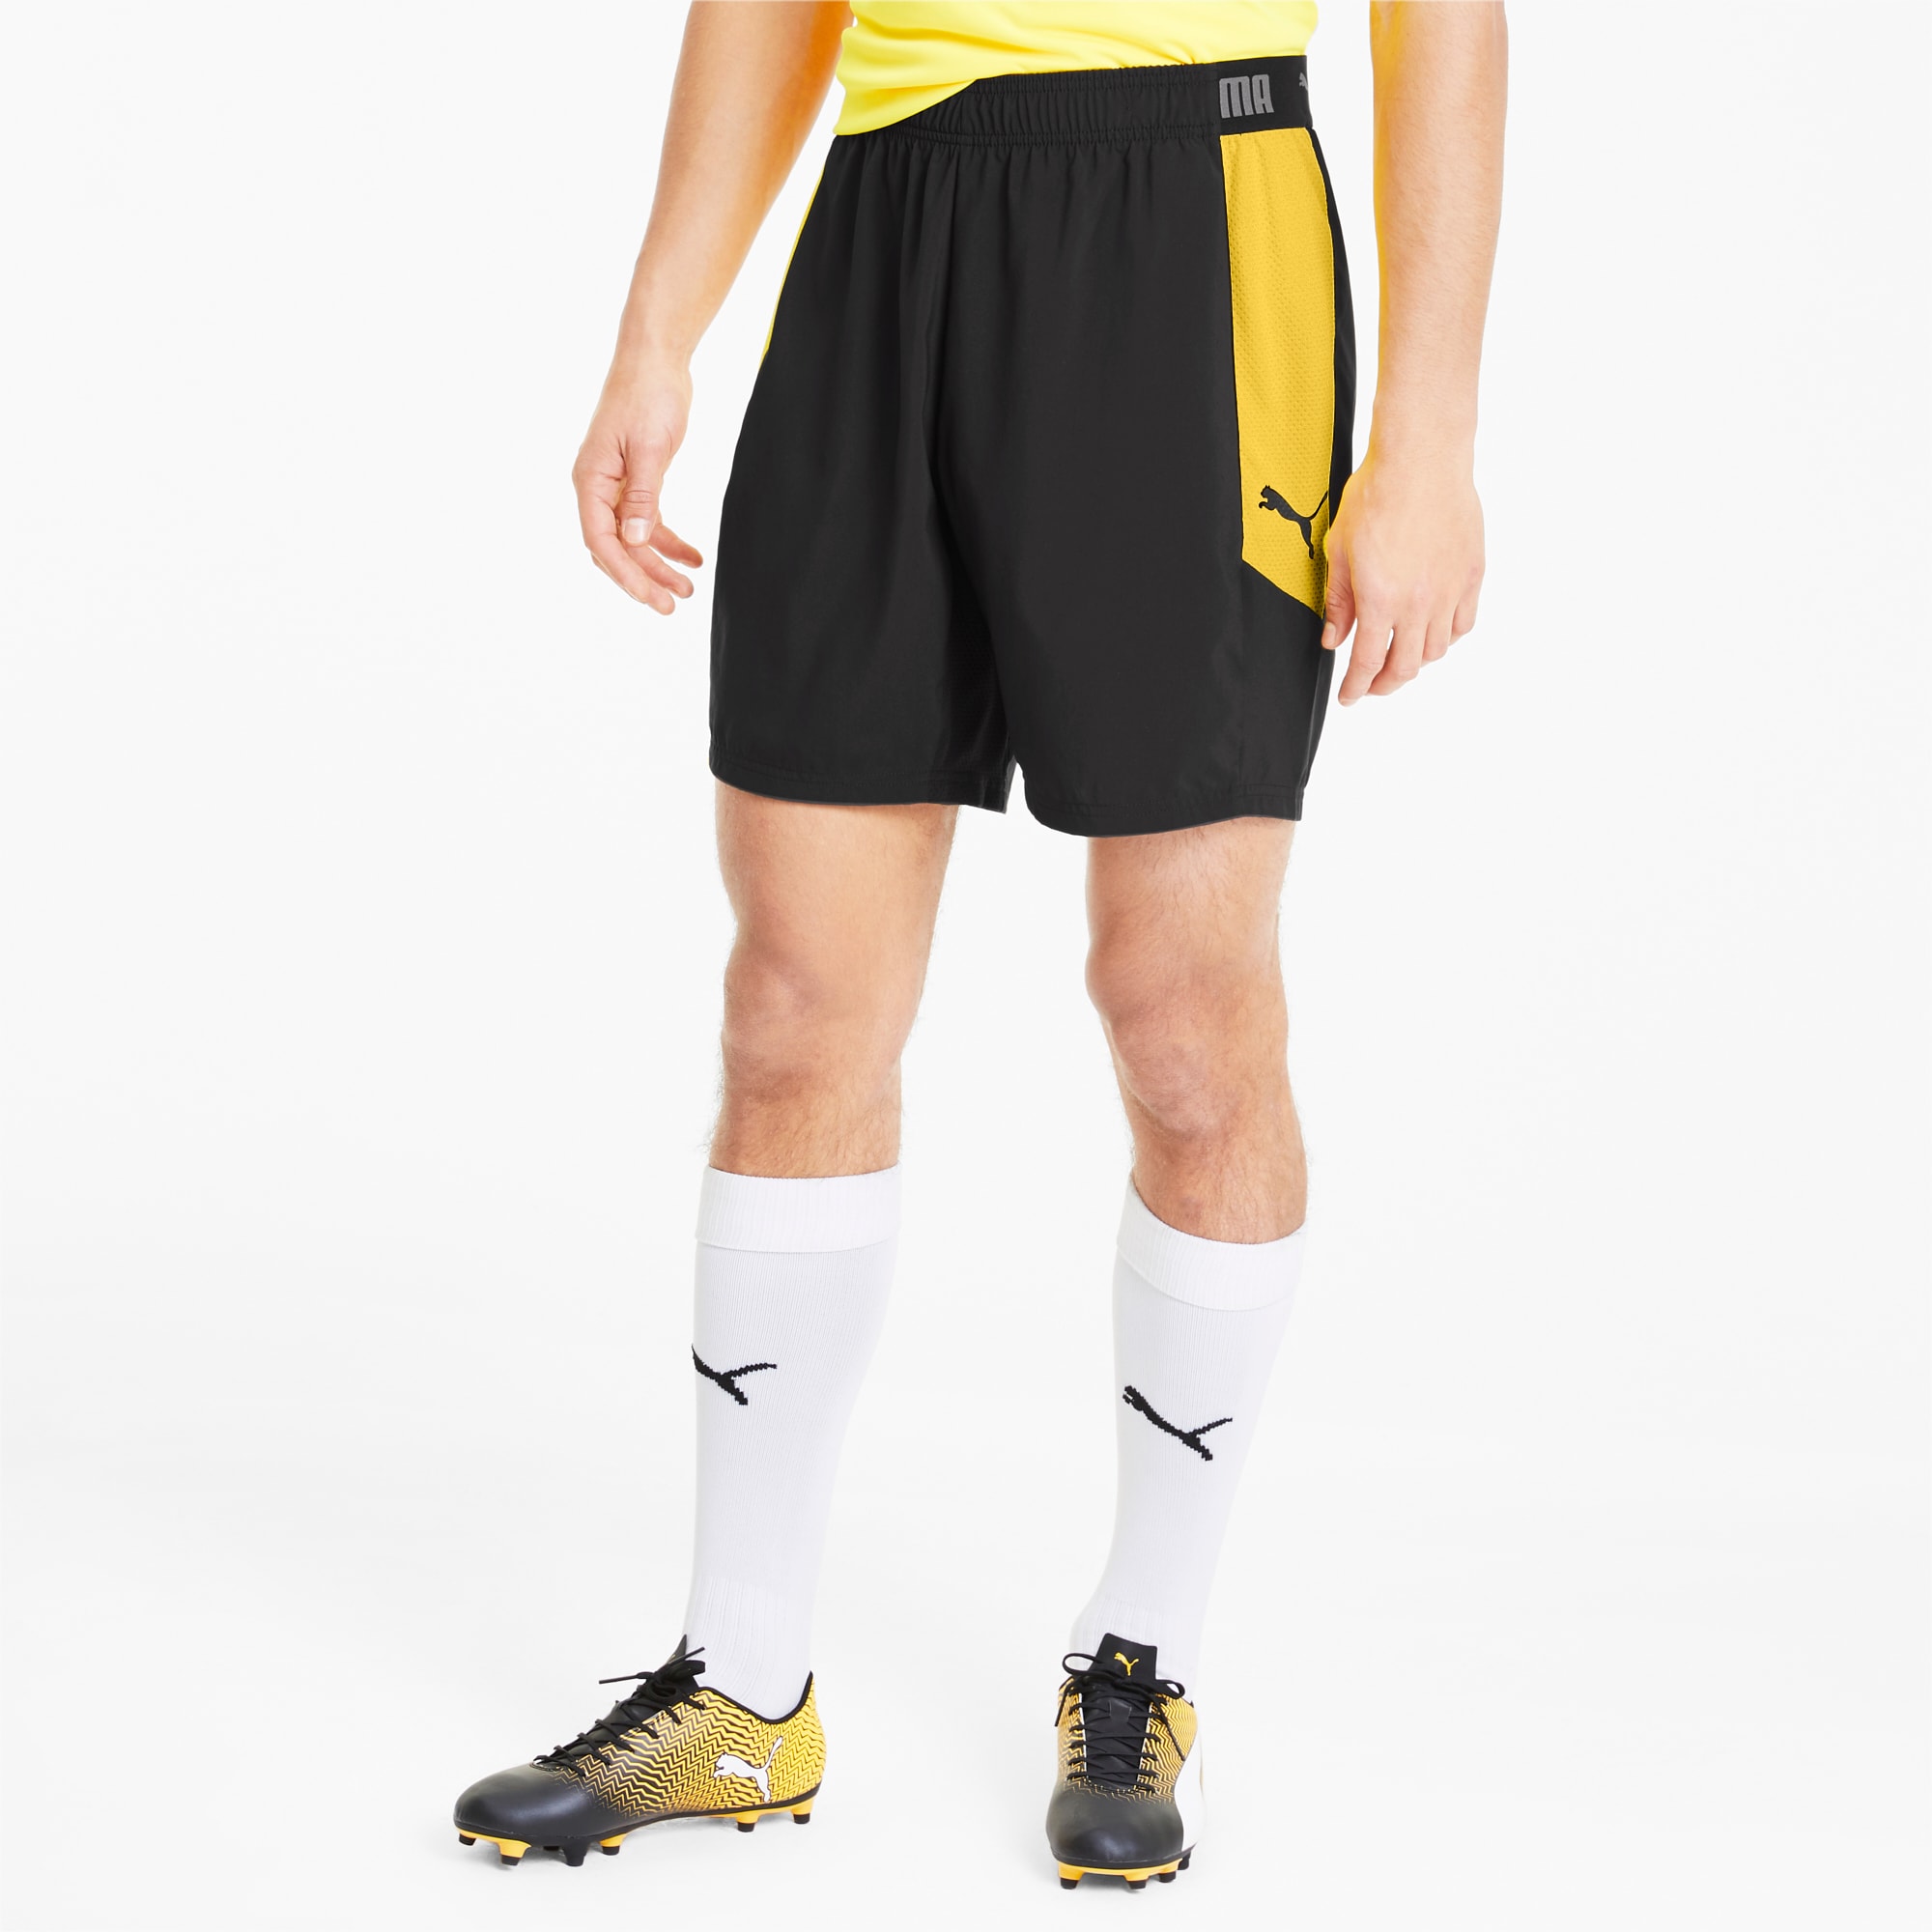 ftblNXT Woven Men's Football Shorts 